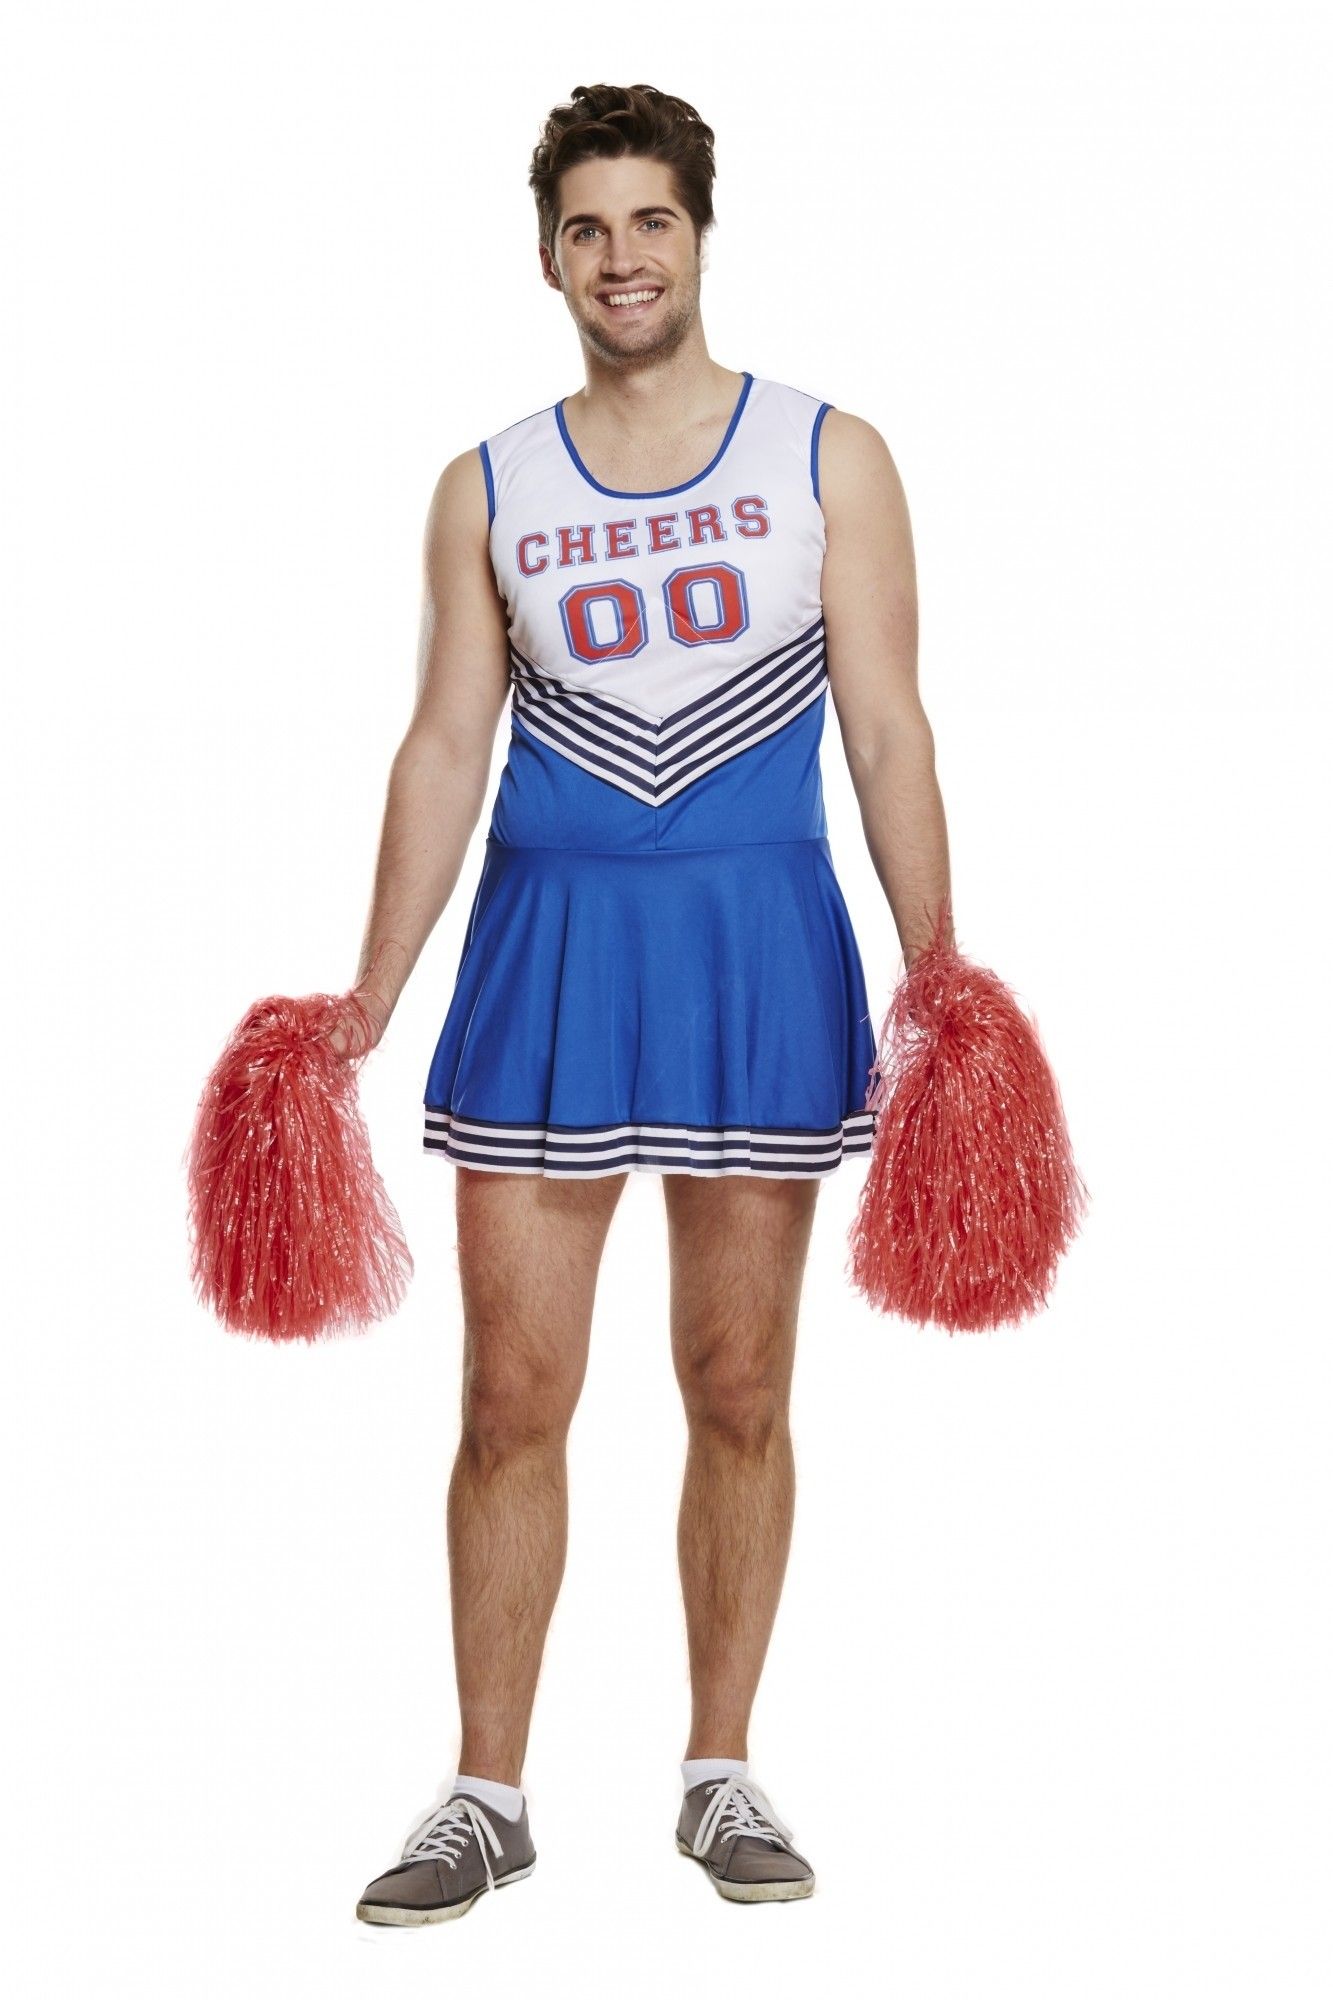 Nieuw Cheerleader kostuum mannen kopen? || Confettifeest.nl MA-84